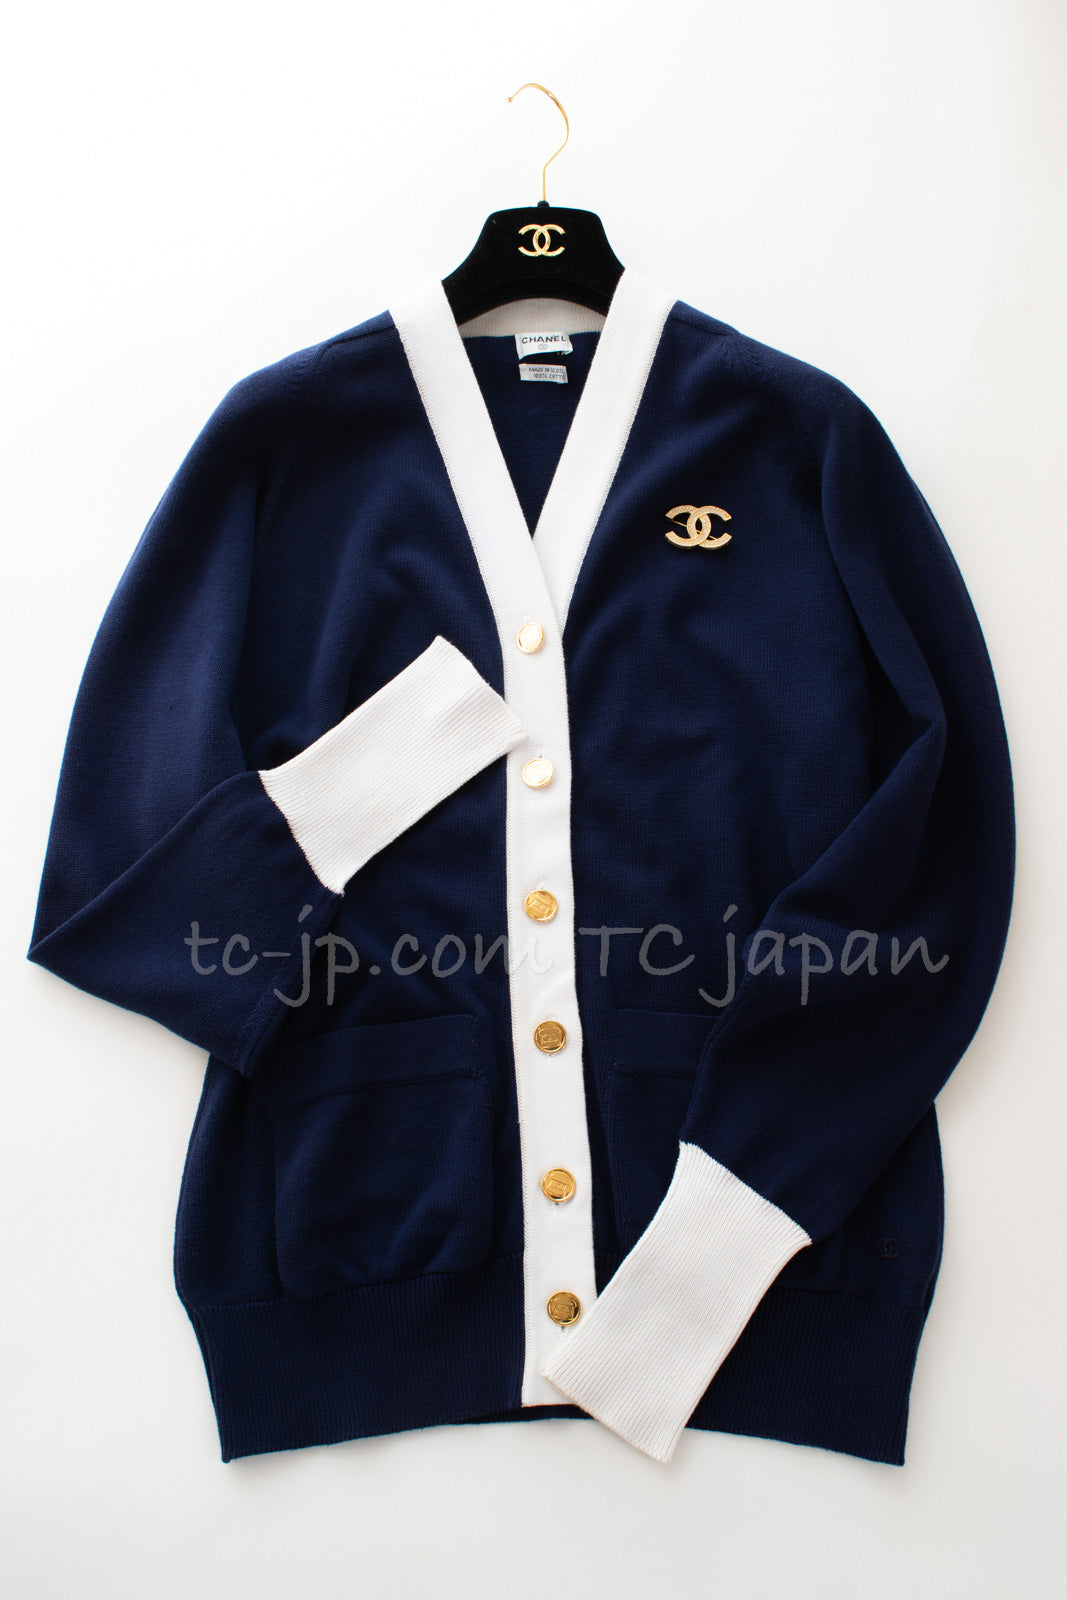 CHANEL 91A Vintage Navy Blue White Cotton Knit Cardigan Matelasse CC Gold Buttons 38 40 ヴィンテージ ネイビー ホワイト コットン バイカラー ニット カーディガン マトラッセ ゴールドボタン 即発